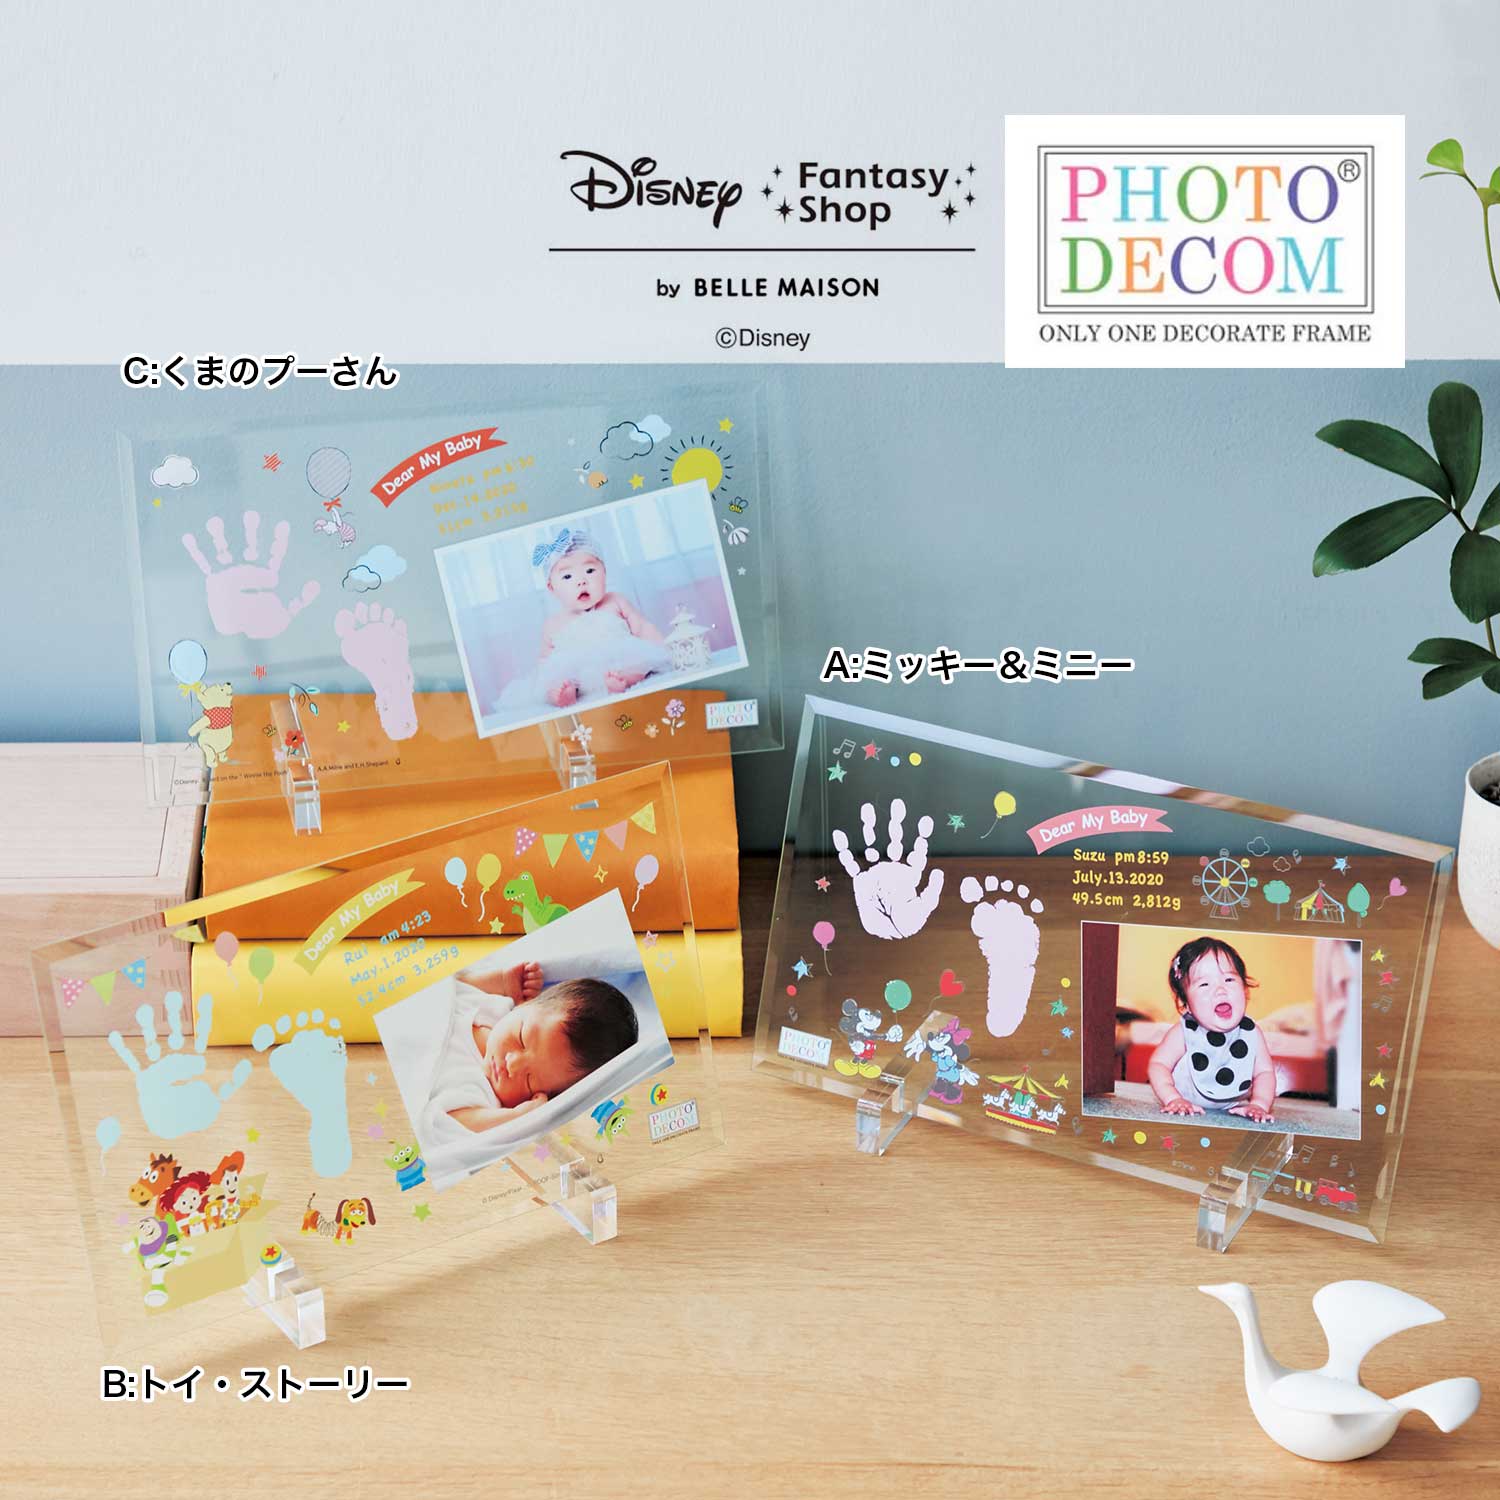 【ディズニー/Disney】【送料無料】 ディズニー フォトデコム・クリアガラス手形足形メモリアルお仕立券画像